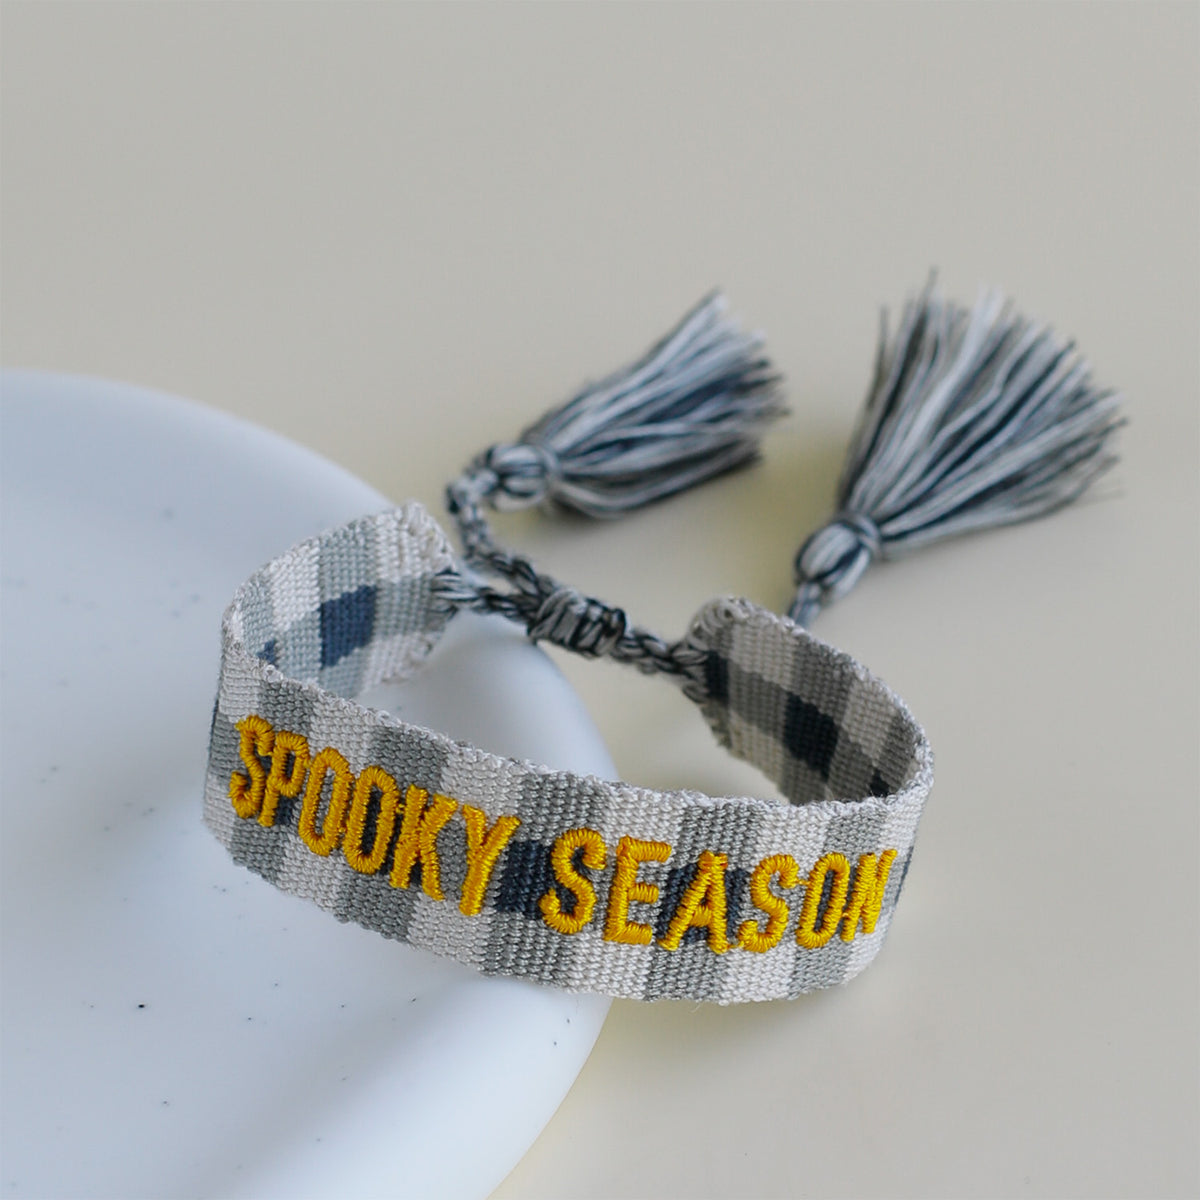 Woven Tassel Bracelet - Spooky Season